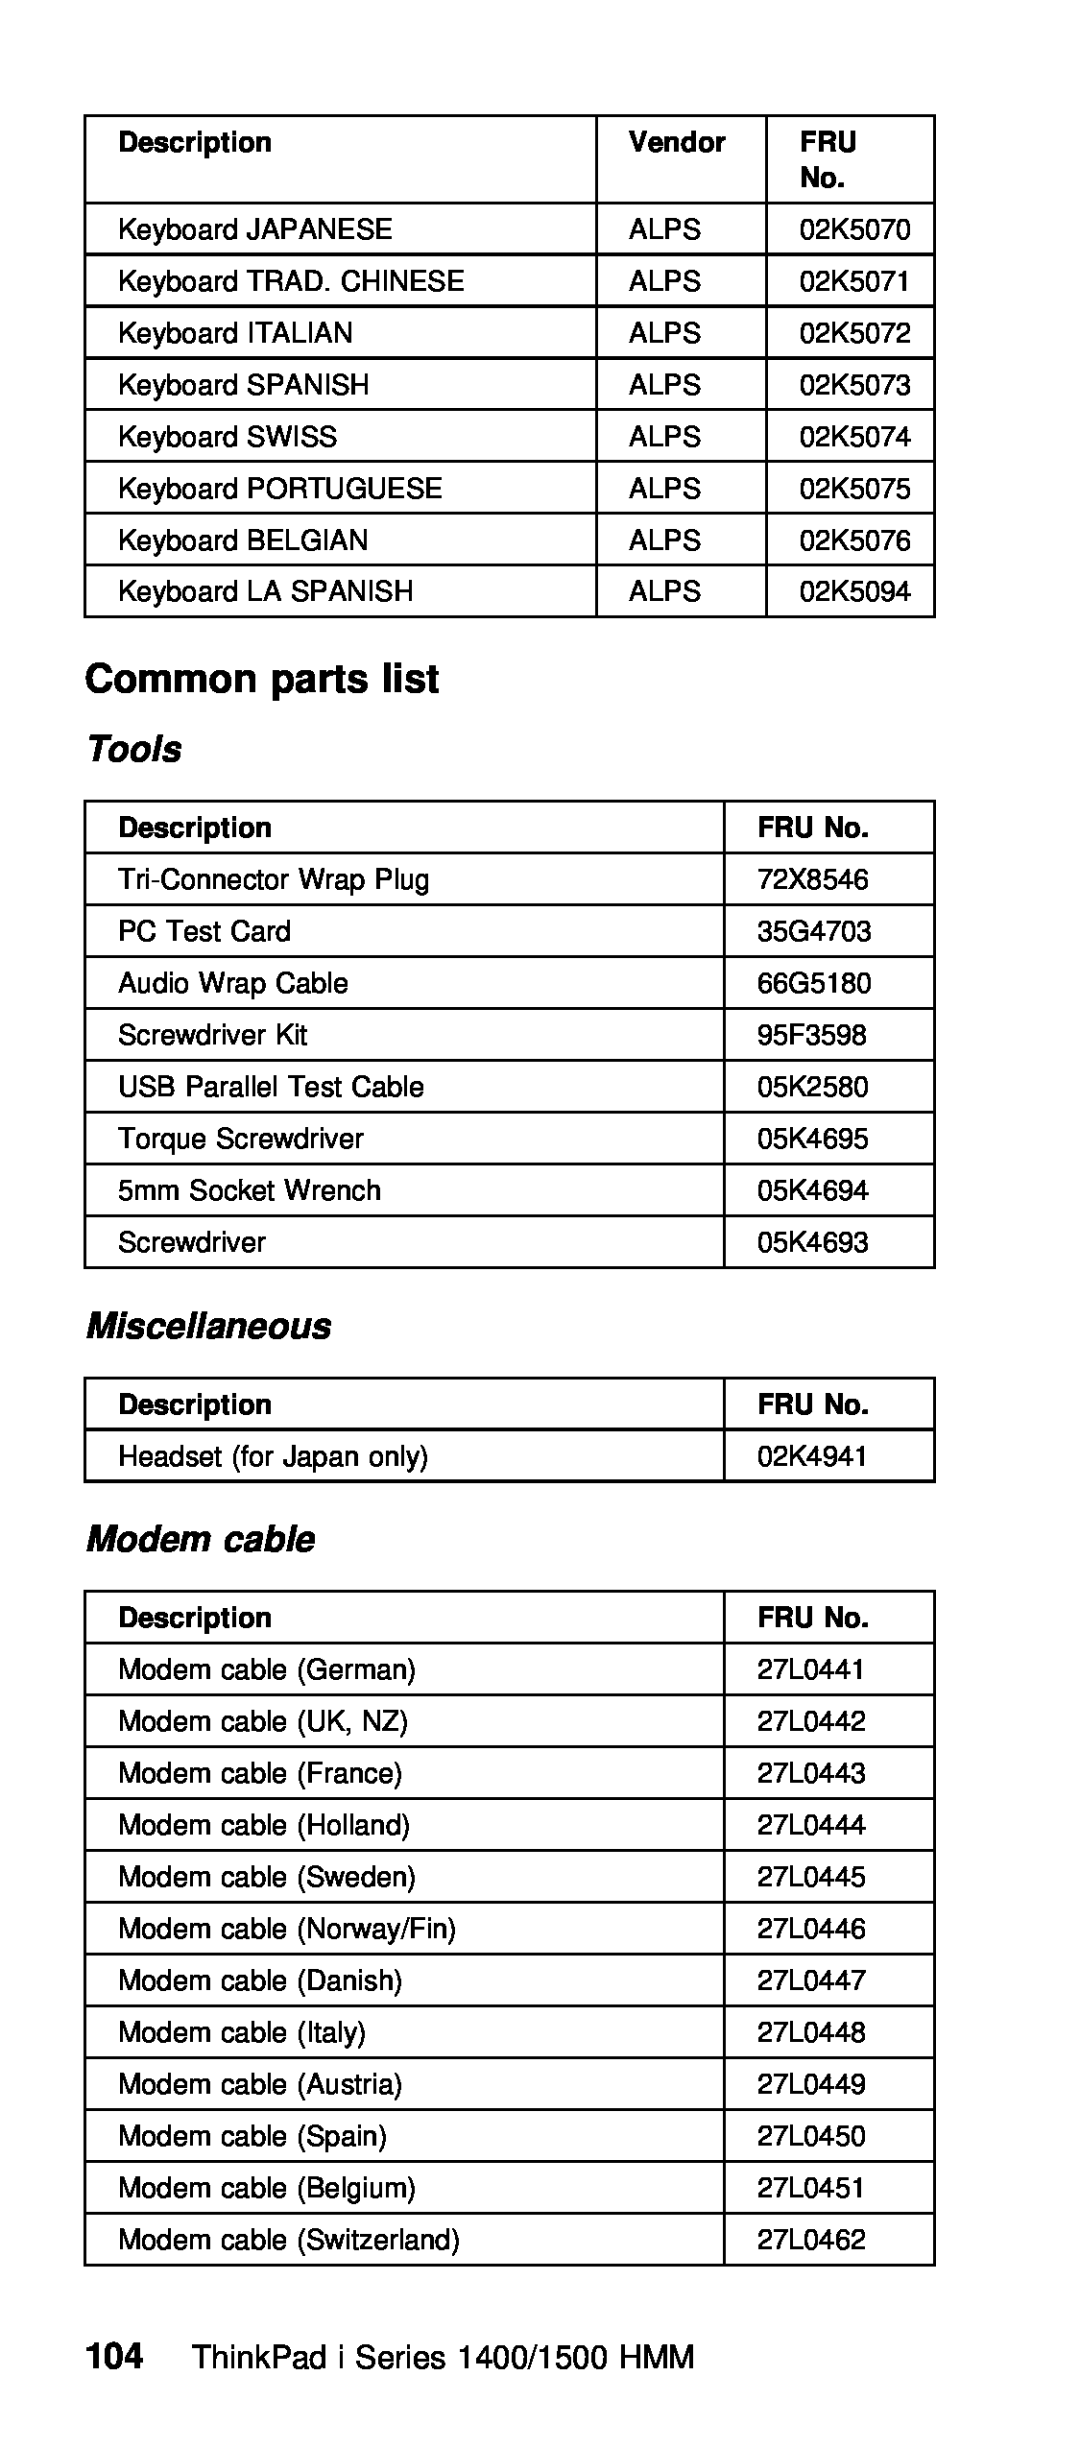 IBM Series 1500, Series 1400 manual list, Tools, cable, Description, Vendor 